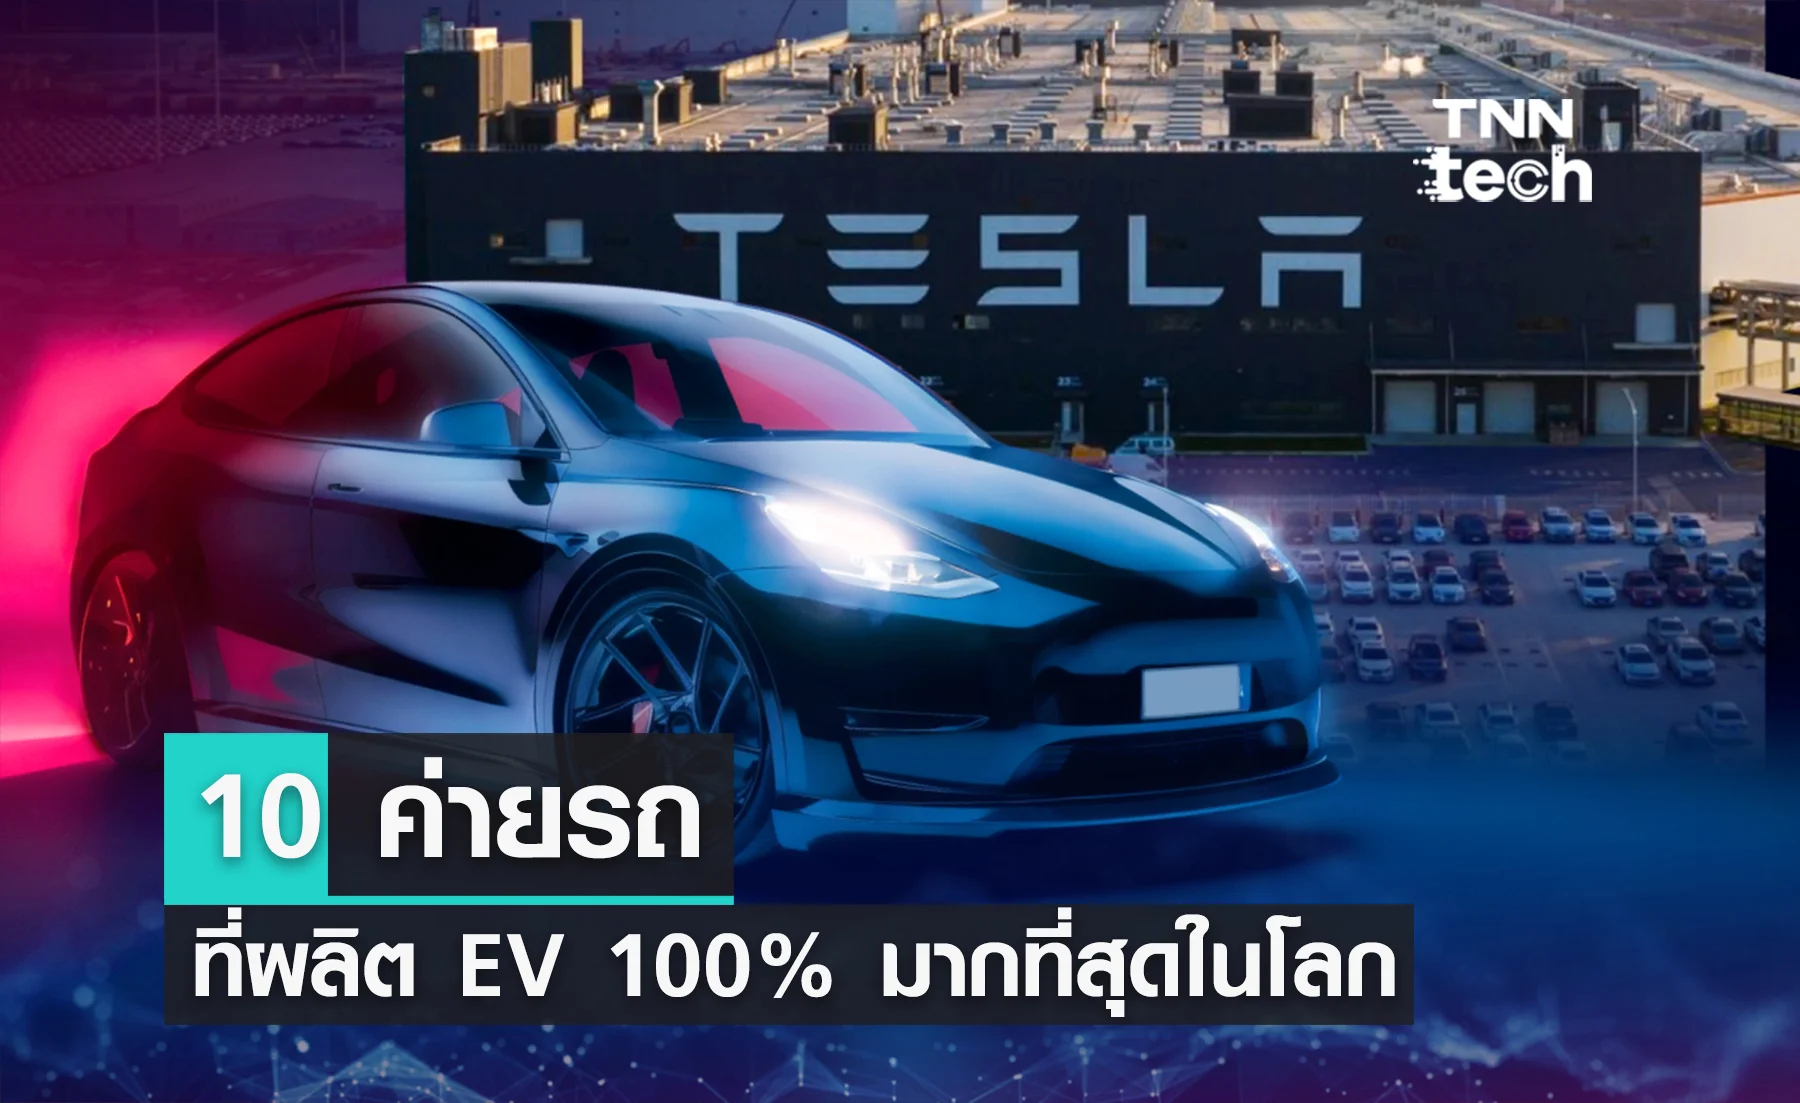 10 ค่ายรถที่ผลิต EV 100% มากที่สุดในโลก ทั้ง Tesla และ BYD ติดโผด้วย !